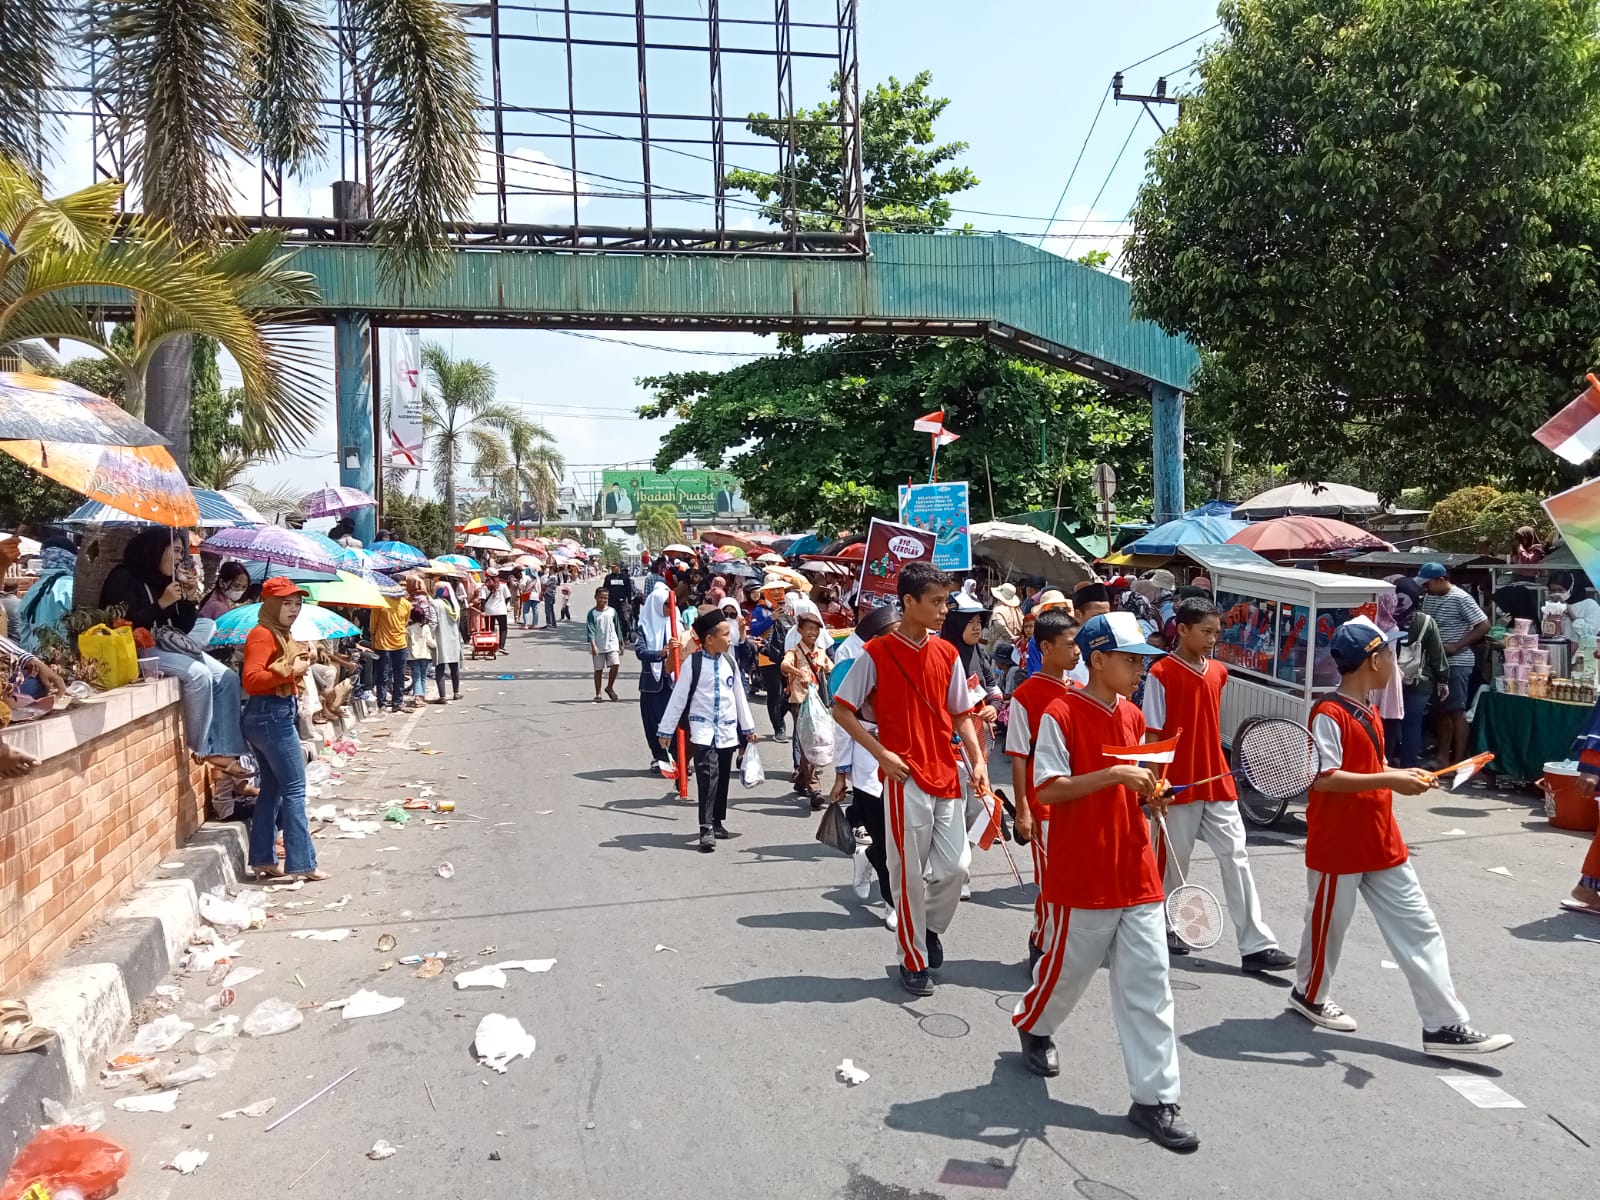 Bersihkan Sampah Karnaval di Prabumulih, Perkim Turunkan 140 Petugas